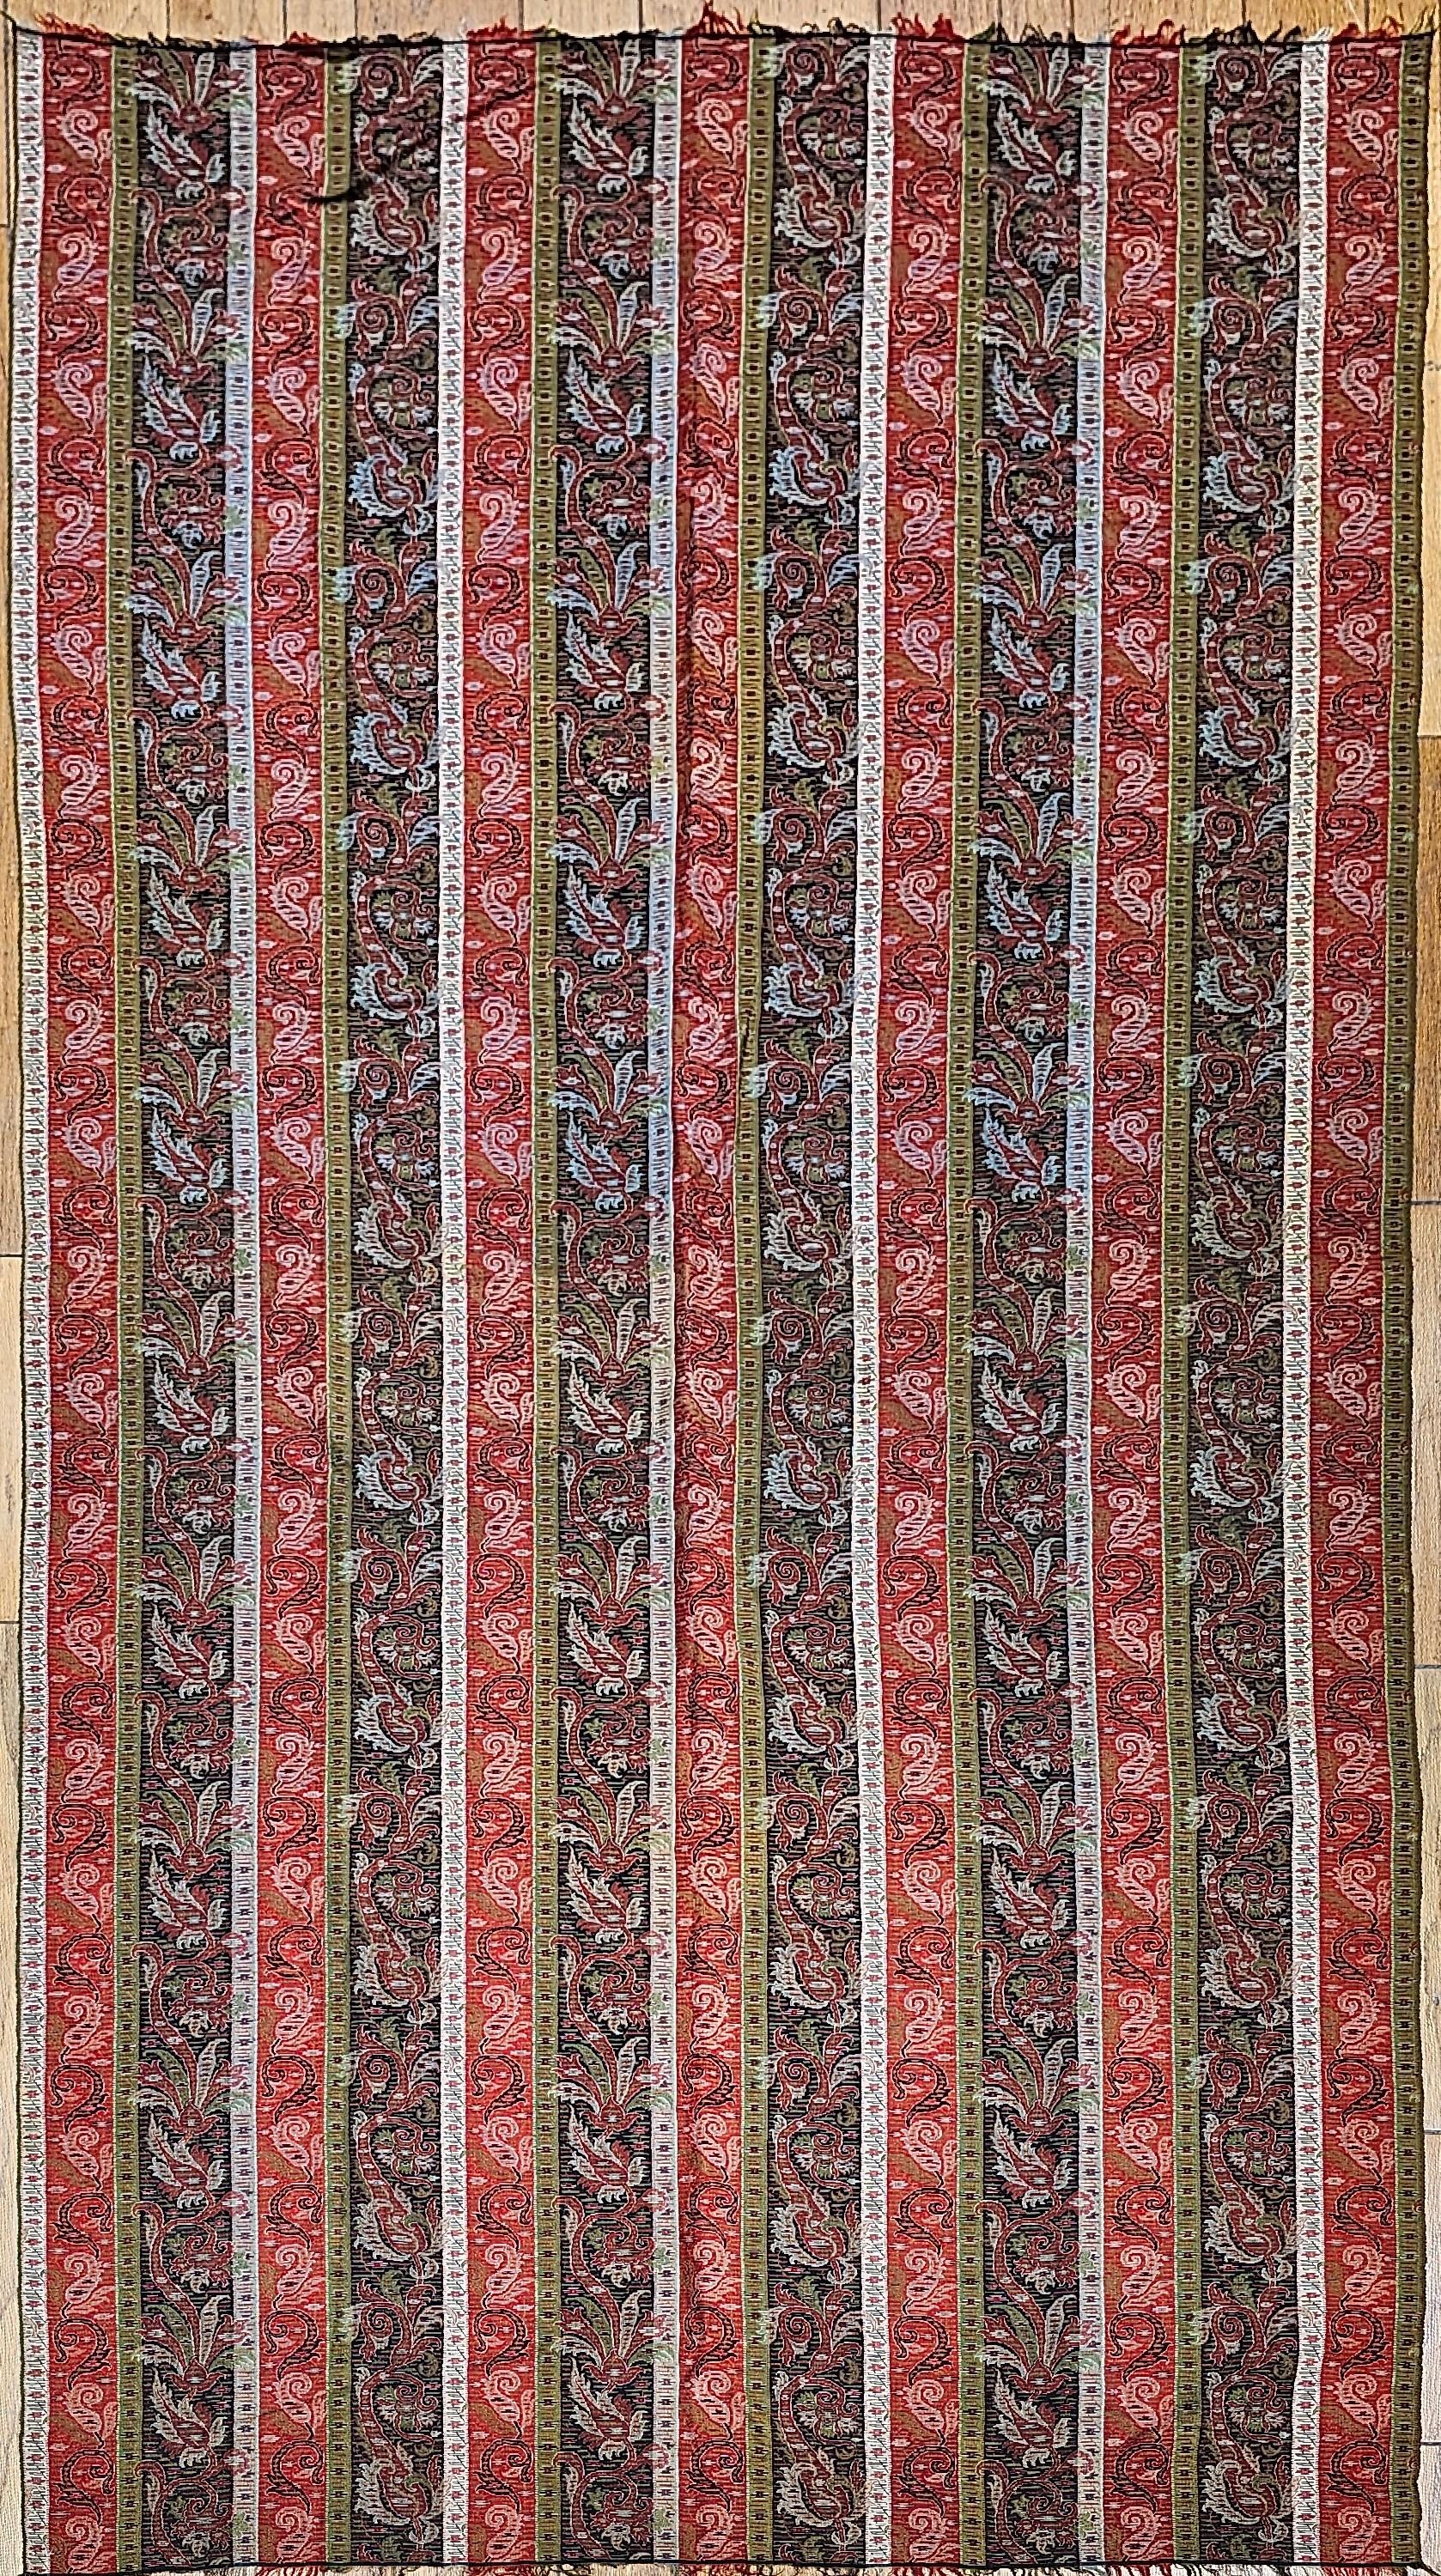 Châle cachemirien du 19e siècle tissé à la main dans le nord-ouest de l'Inde en rouge brique, ivoire, noir et vert.  Le châle est orné d'un motif cachemire en bordure et de formes cachemire plus grandes à chaque extrémité, la partie centrale du